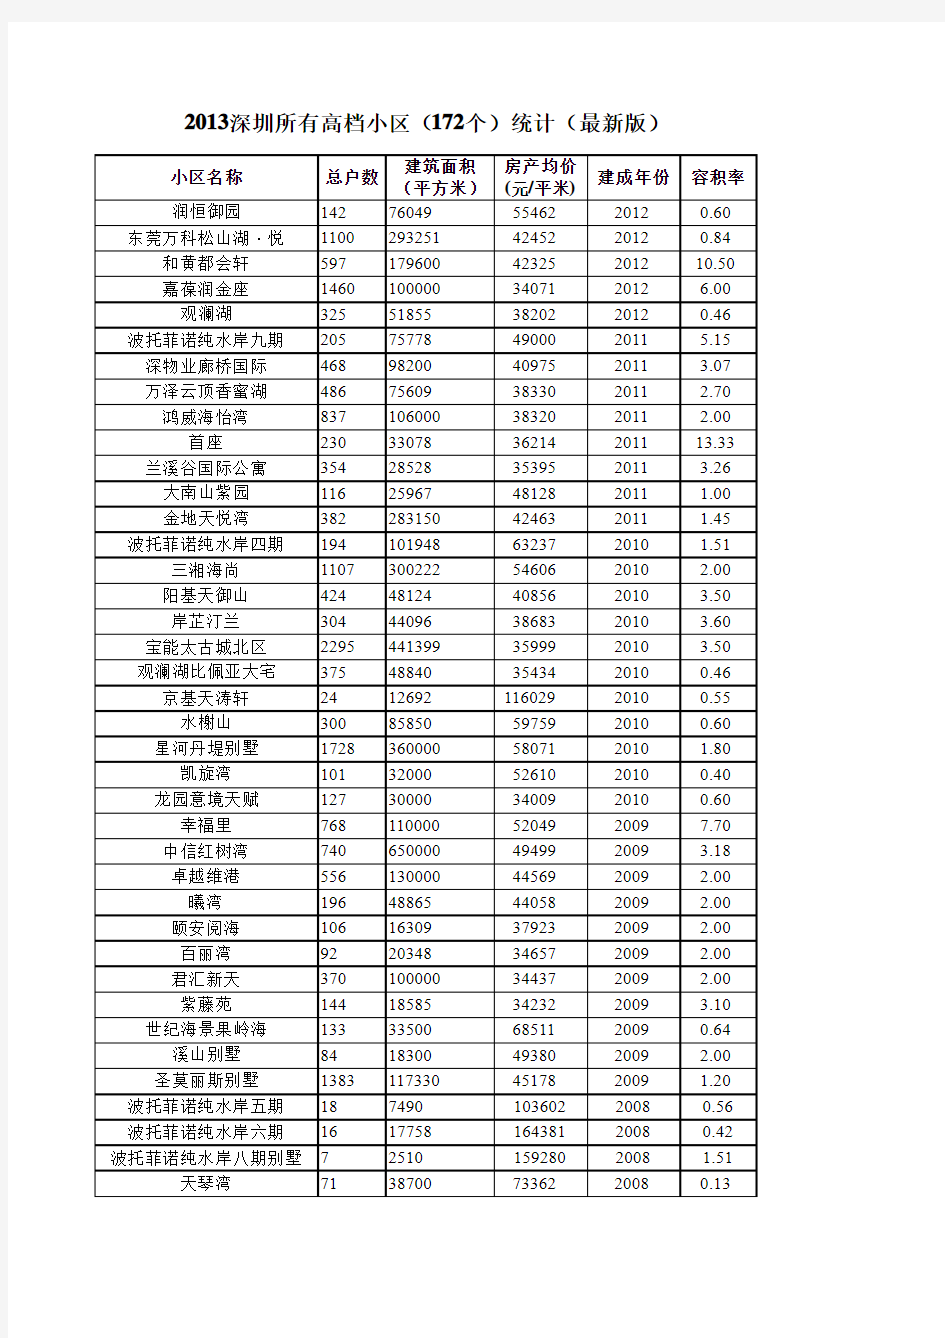 2013【深圳】所有高档小区(172个)统计(最新版)